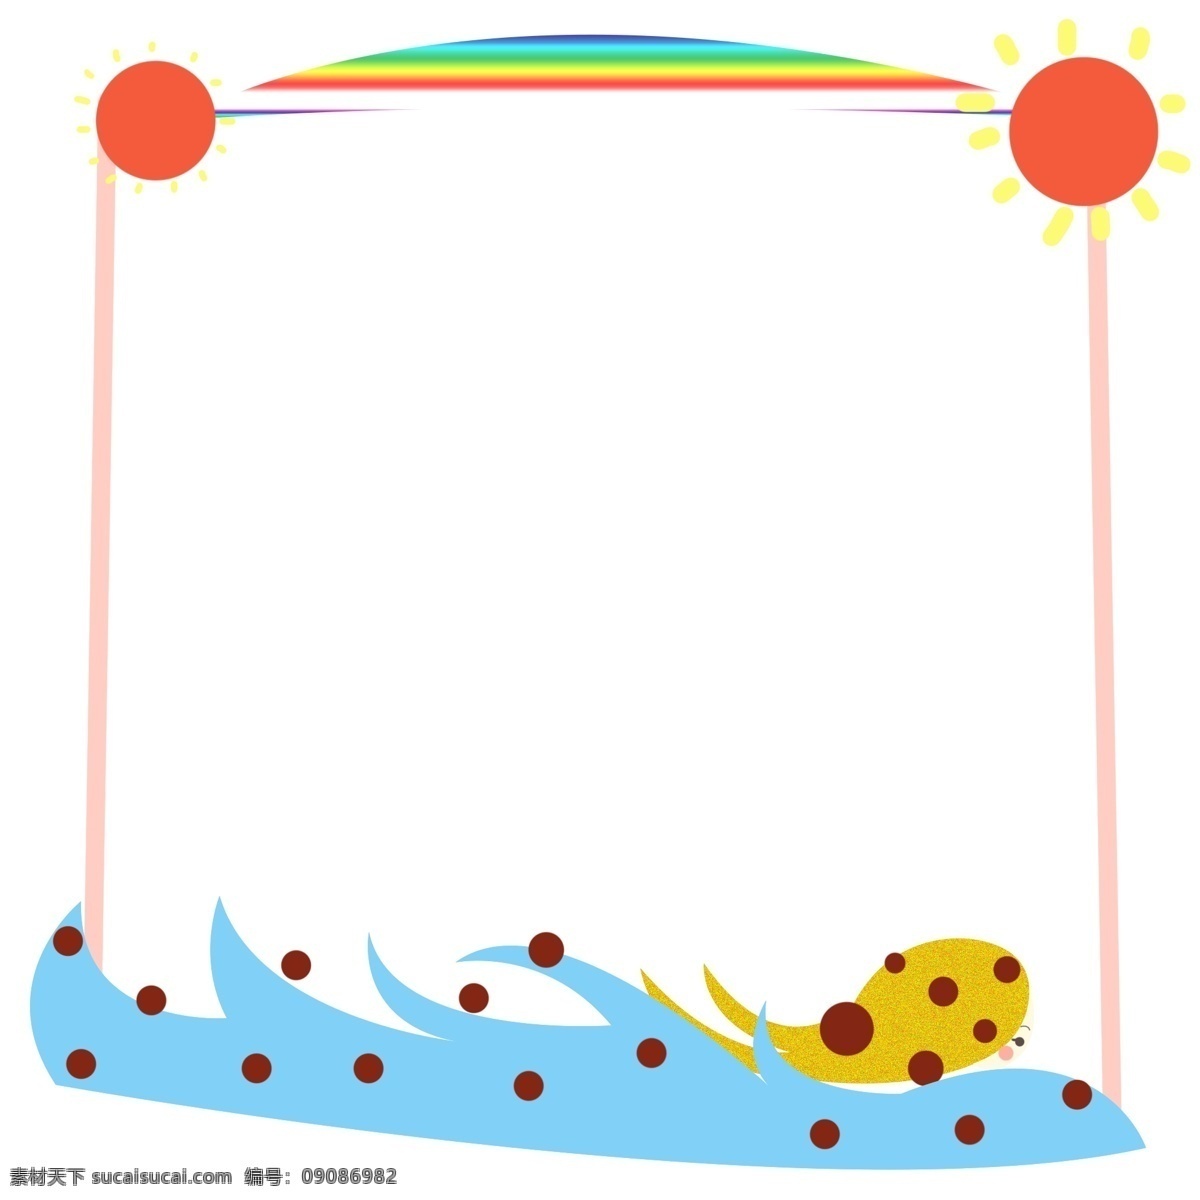 创意 大自然 边框 插画 太阳 彩虹 海水 小鱼 创意边框 大自然边框 边框插图 小框 黄色鲸鱼 边框插画